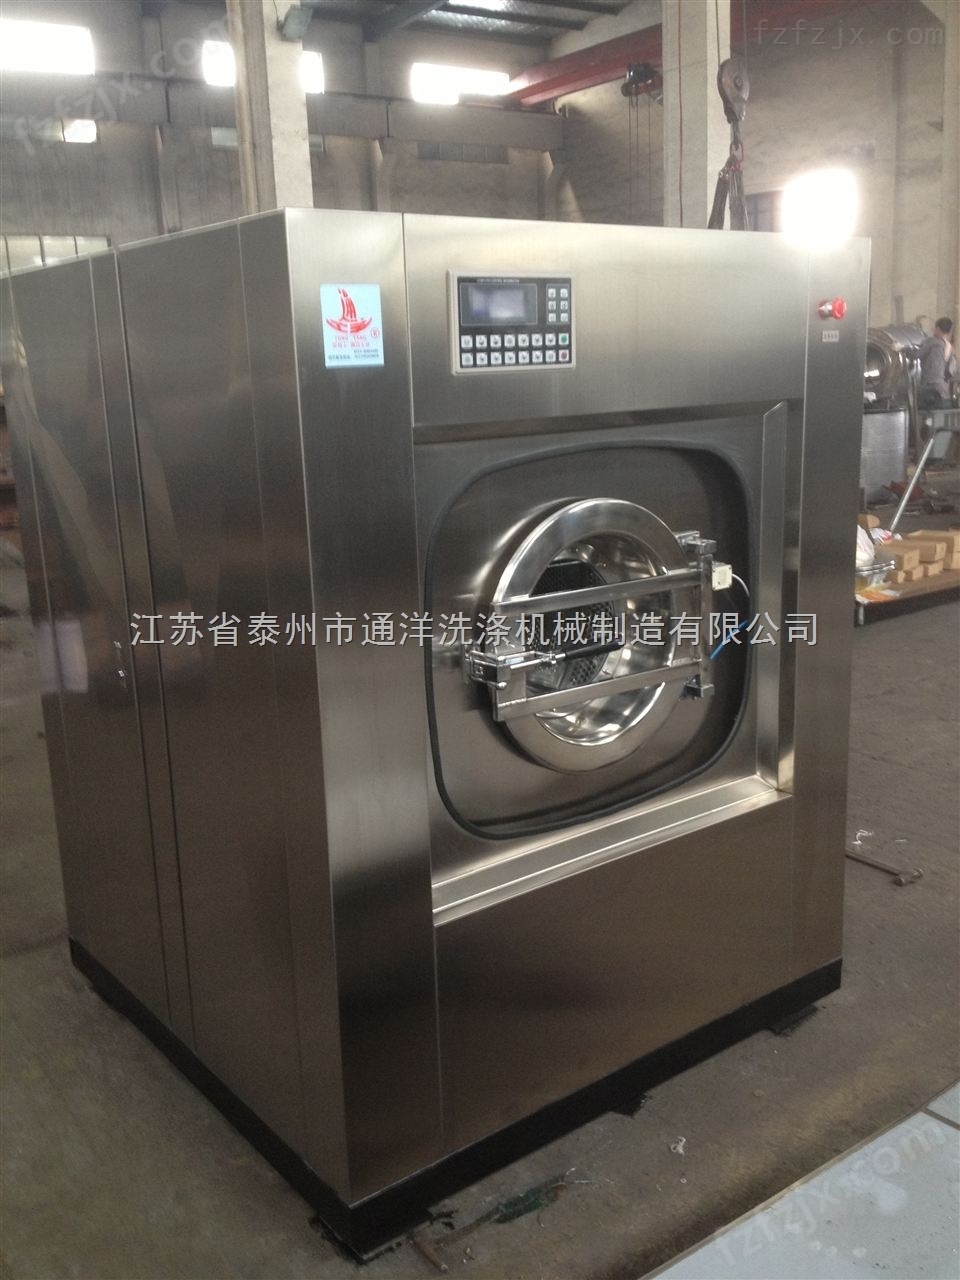 泰州全自动洗脱机尺寸厂家批发全自动洗衣机